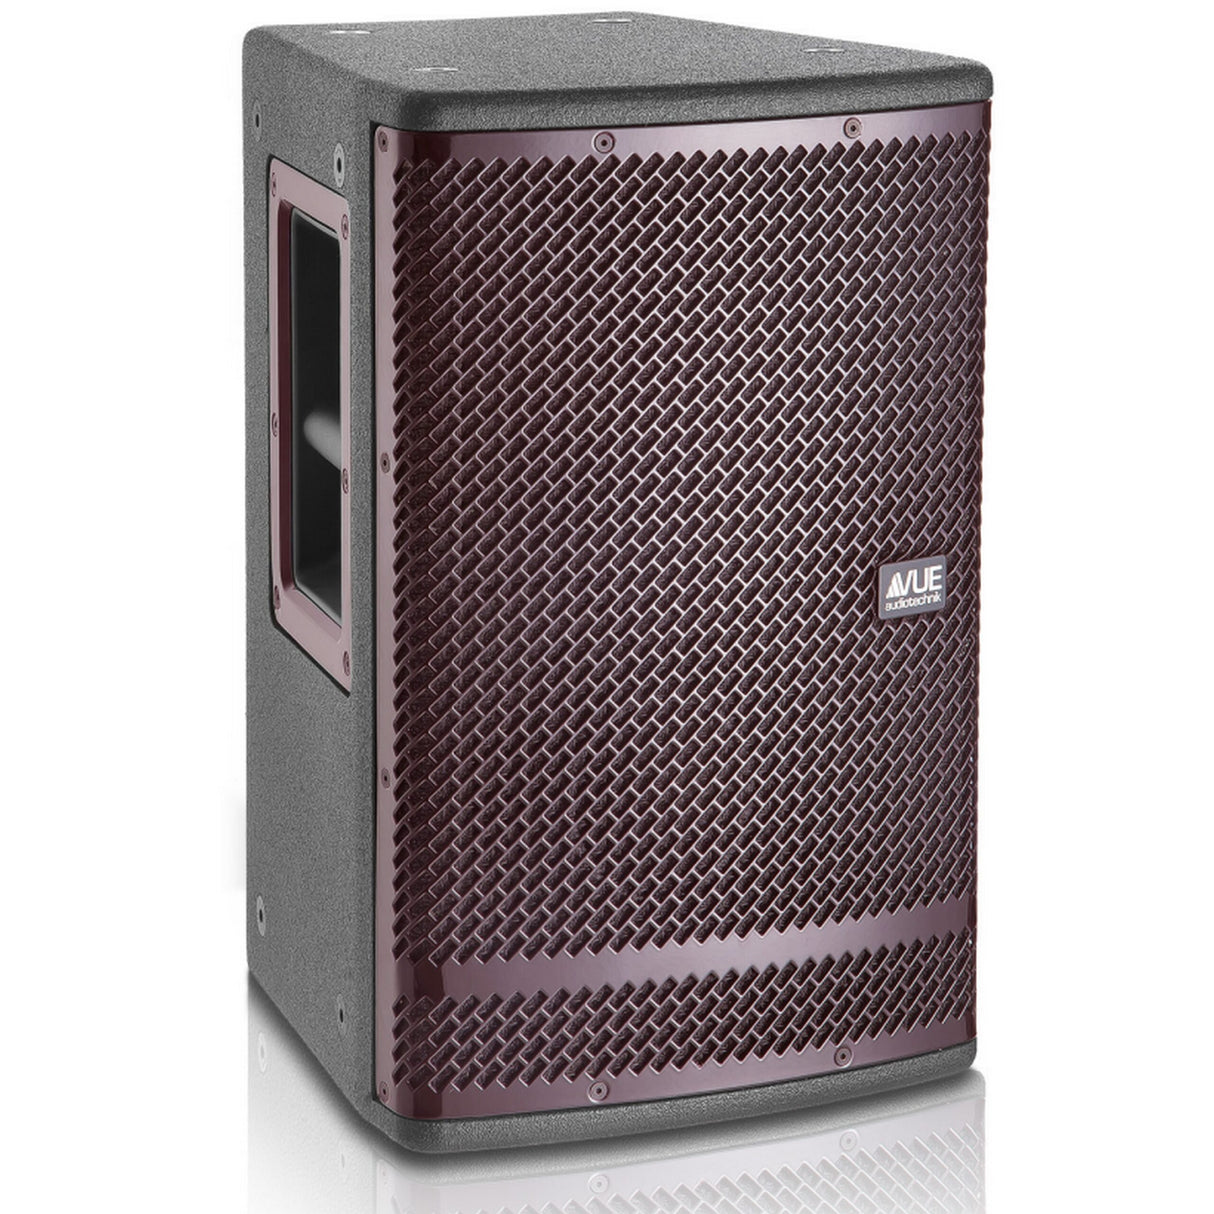 VUE Audiotechnik h-8 Dual 8-Inch High Definition Full Range Speaker System